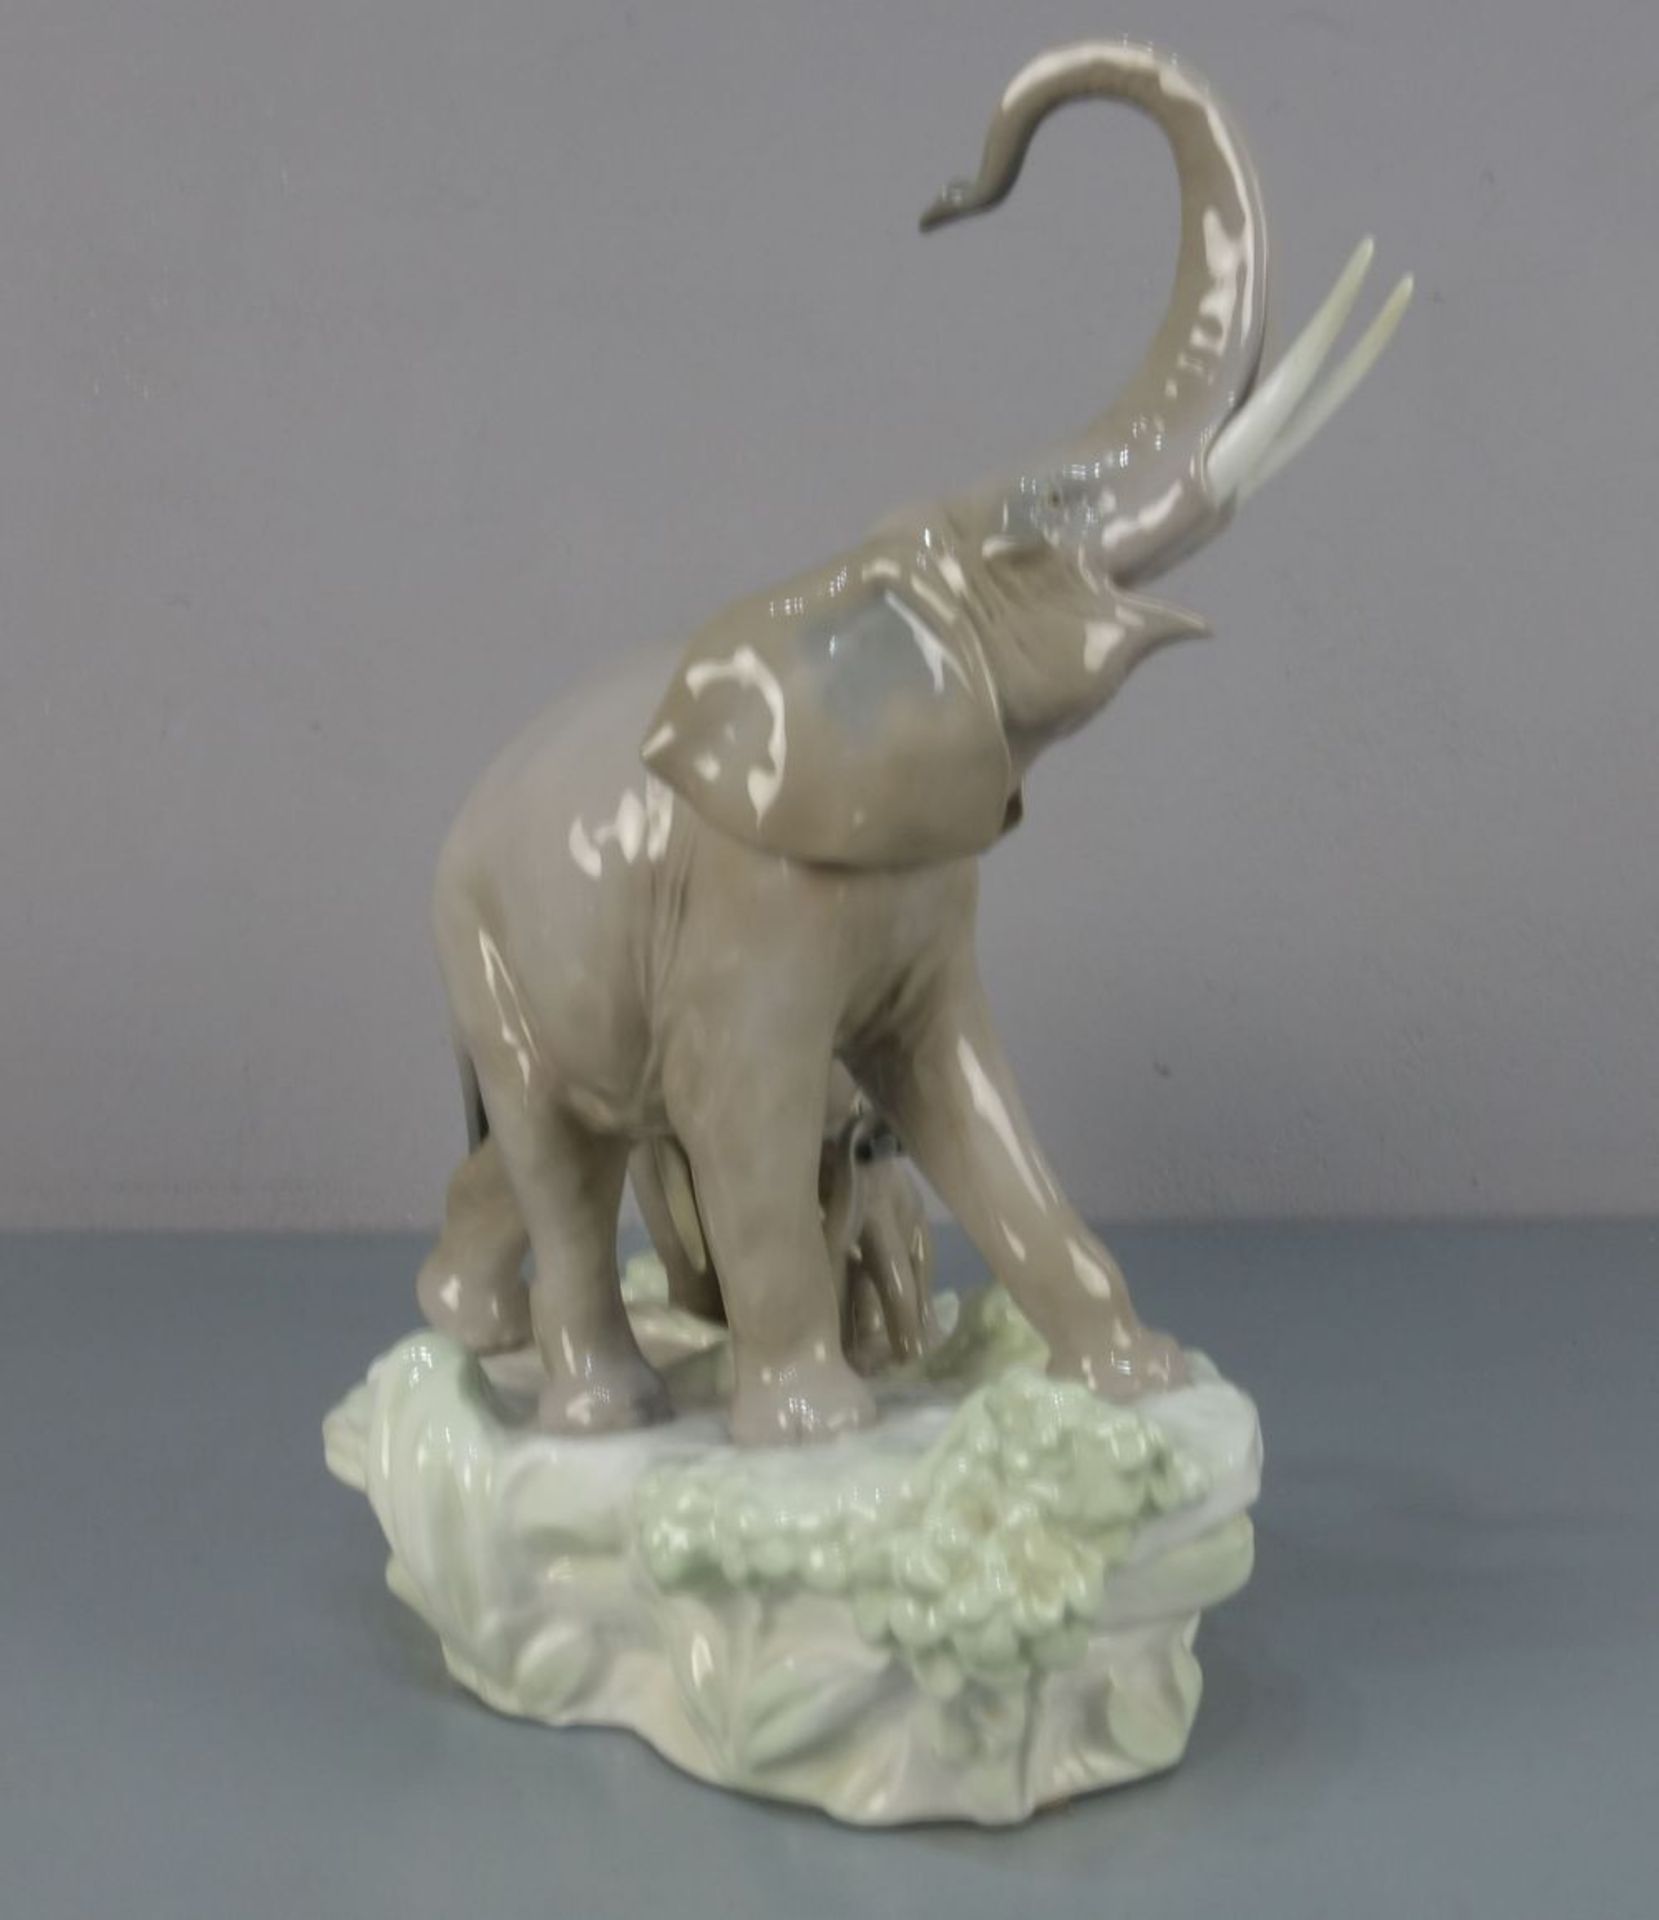 GROSSE FIGURENGRUPPE: "Elefantenfamilie", Porzellan, Manufaktur Lladro, Spanien, unter dem Stand - Bild 2 aus 4